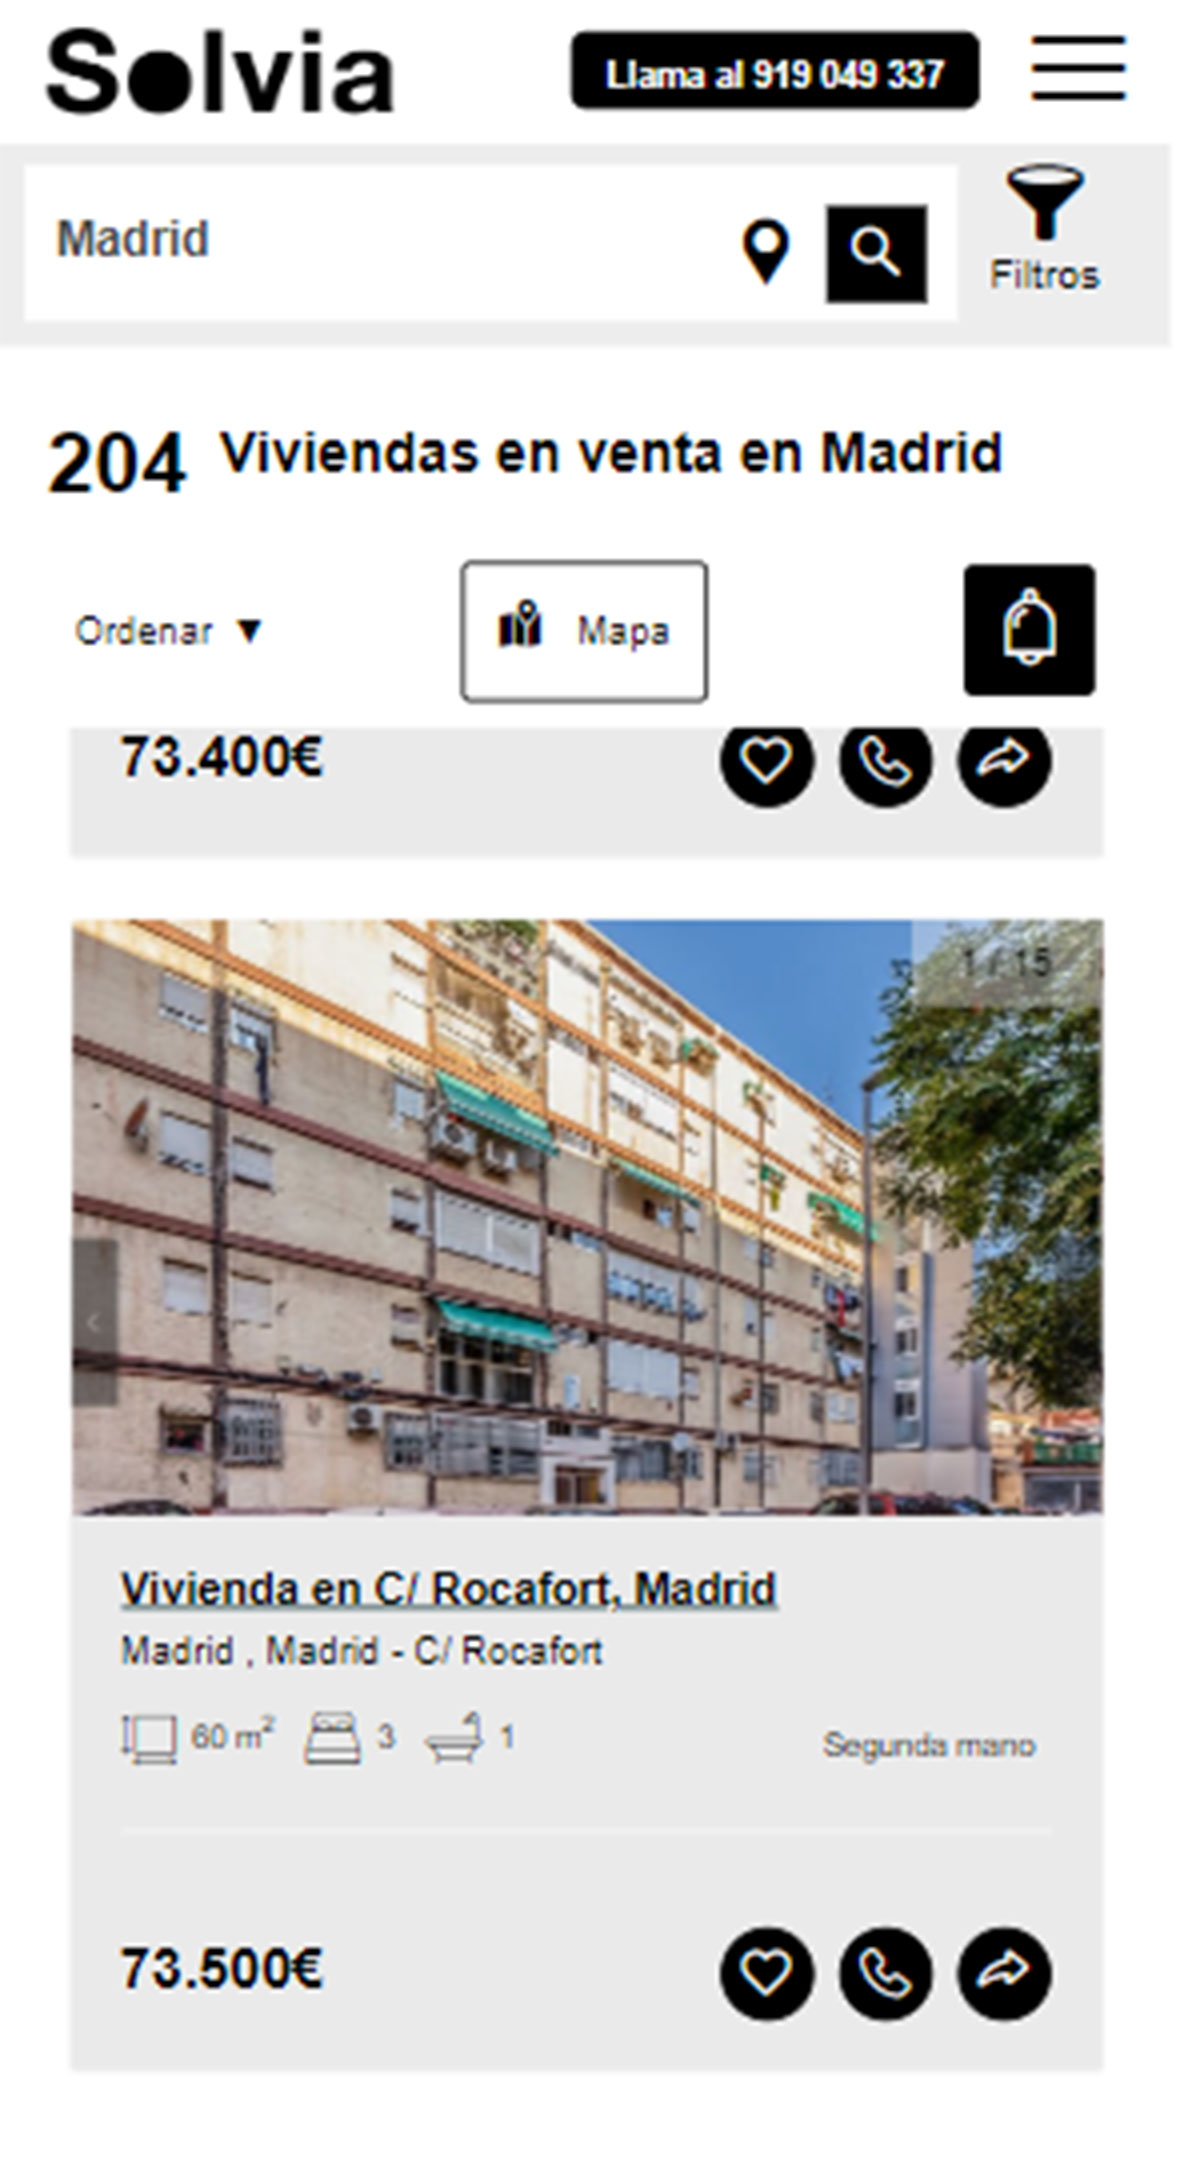 Piso en la ciudad de Madrid por 75.300 euros